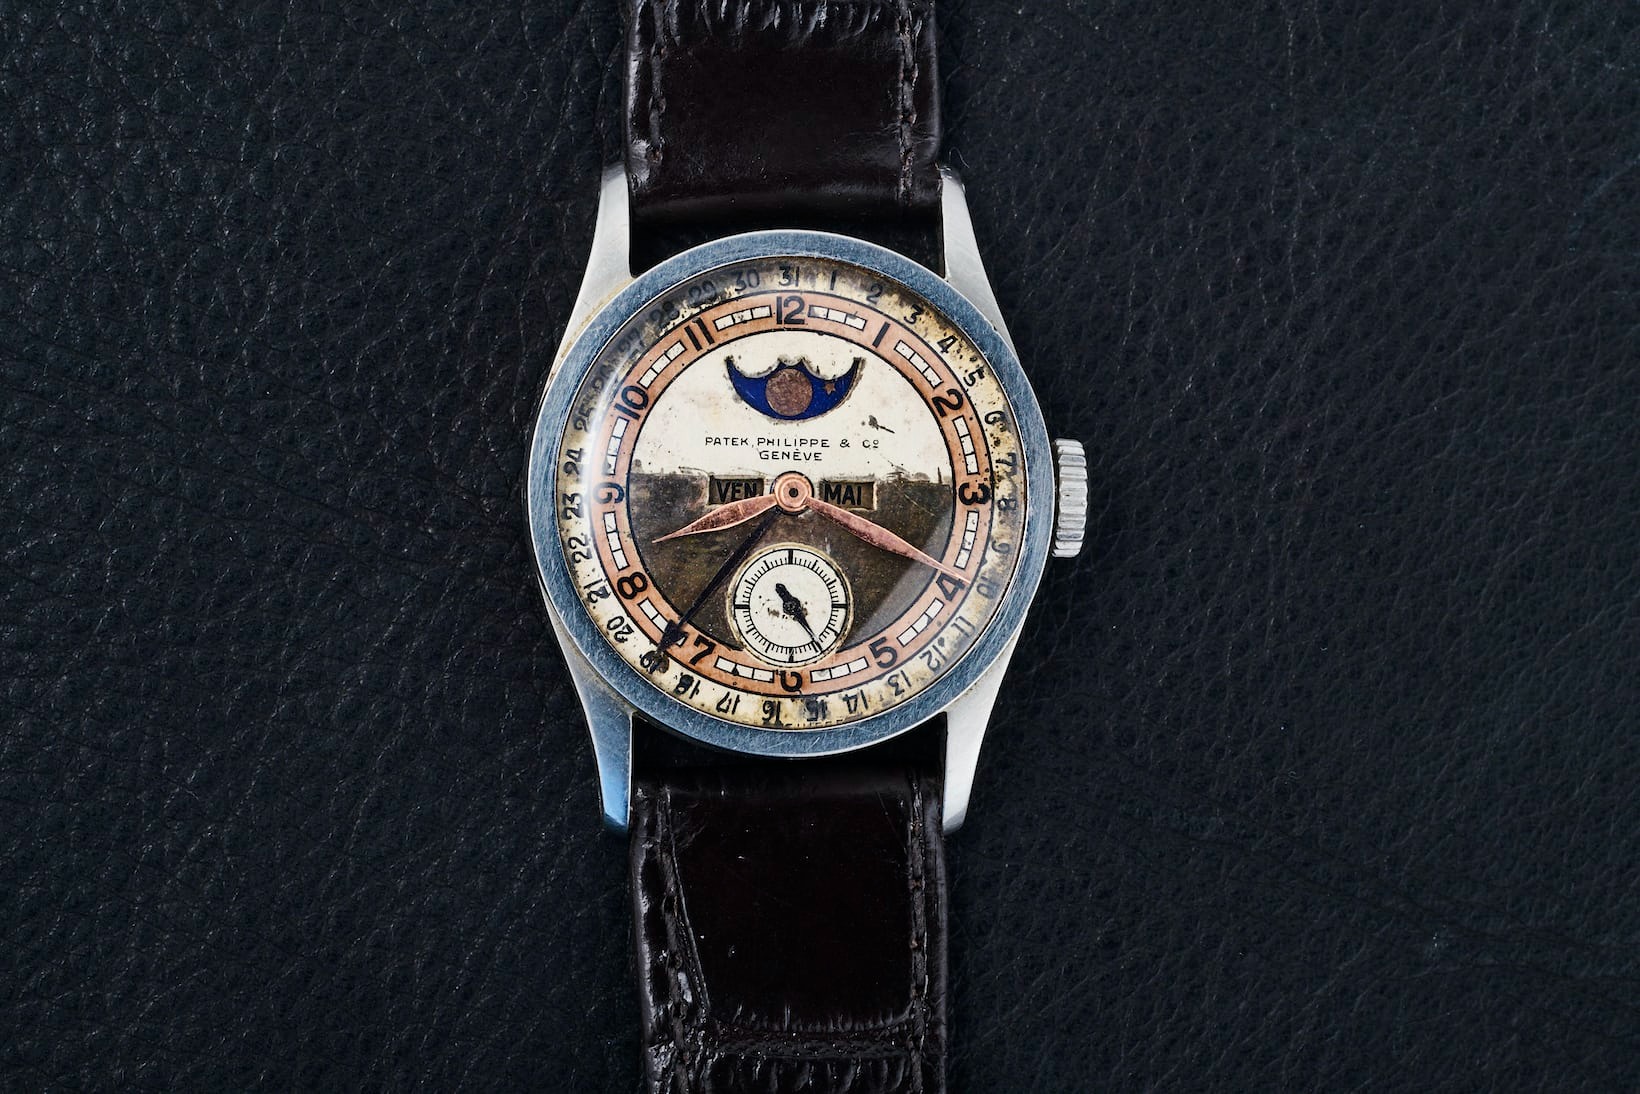 Đồng hồ Patek Philippe thuộc sở hữu từ Hoàng đế cuối cùng được bán với giá 6,2 triệu USD